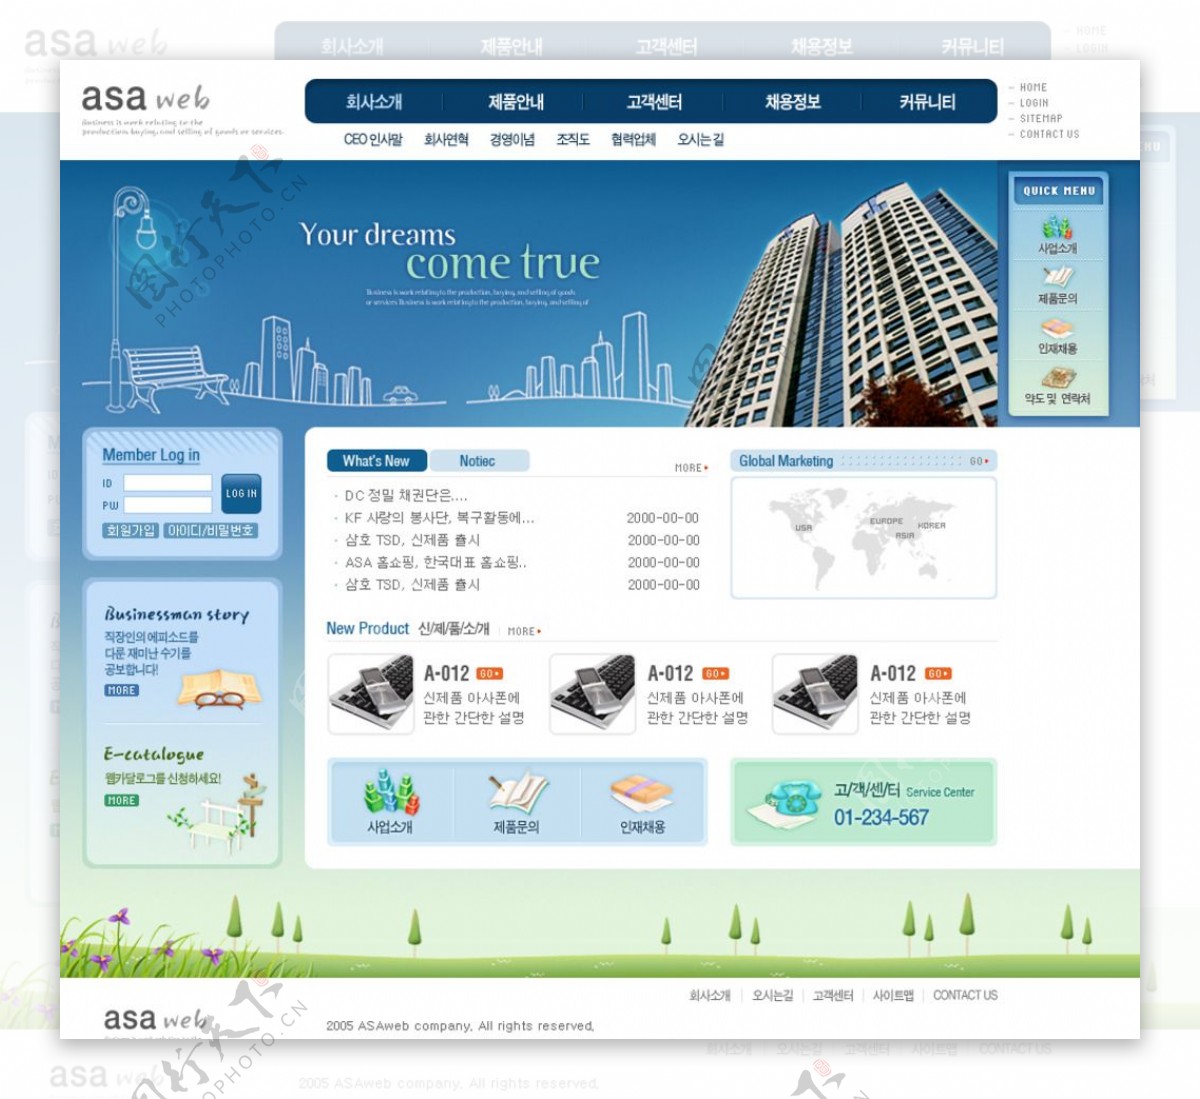 韩国企业网站创意类型设计素材